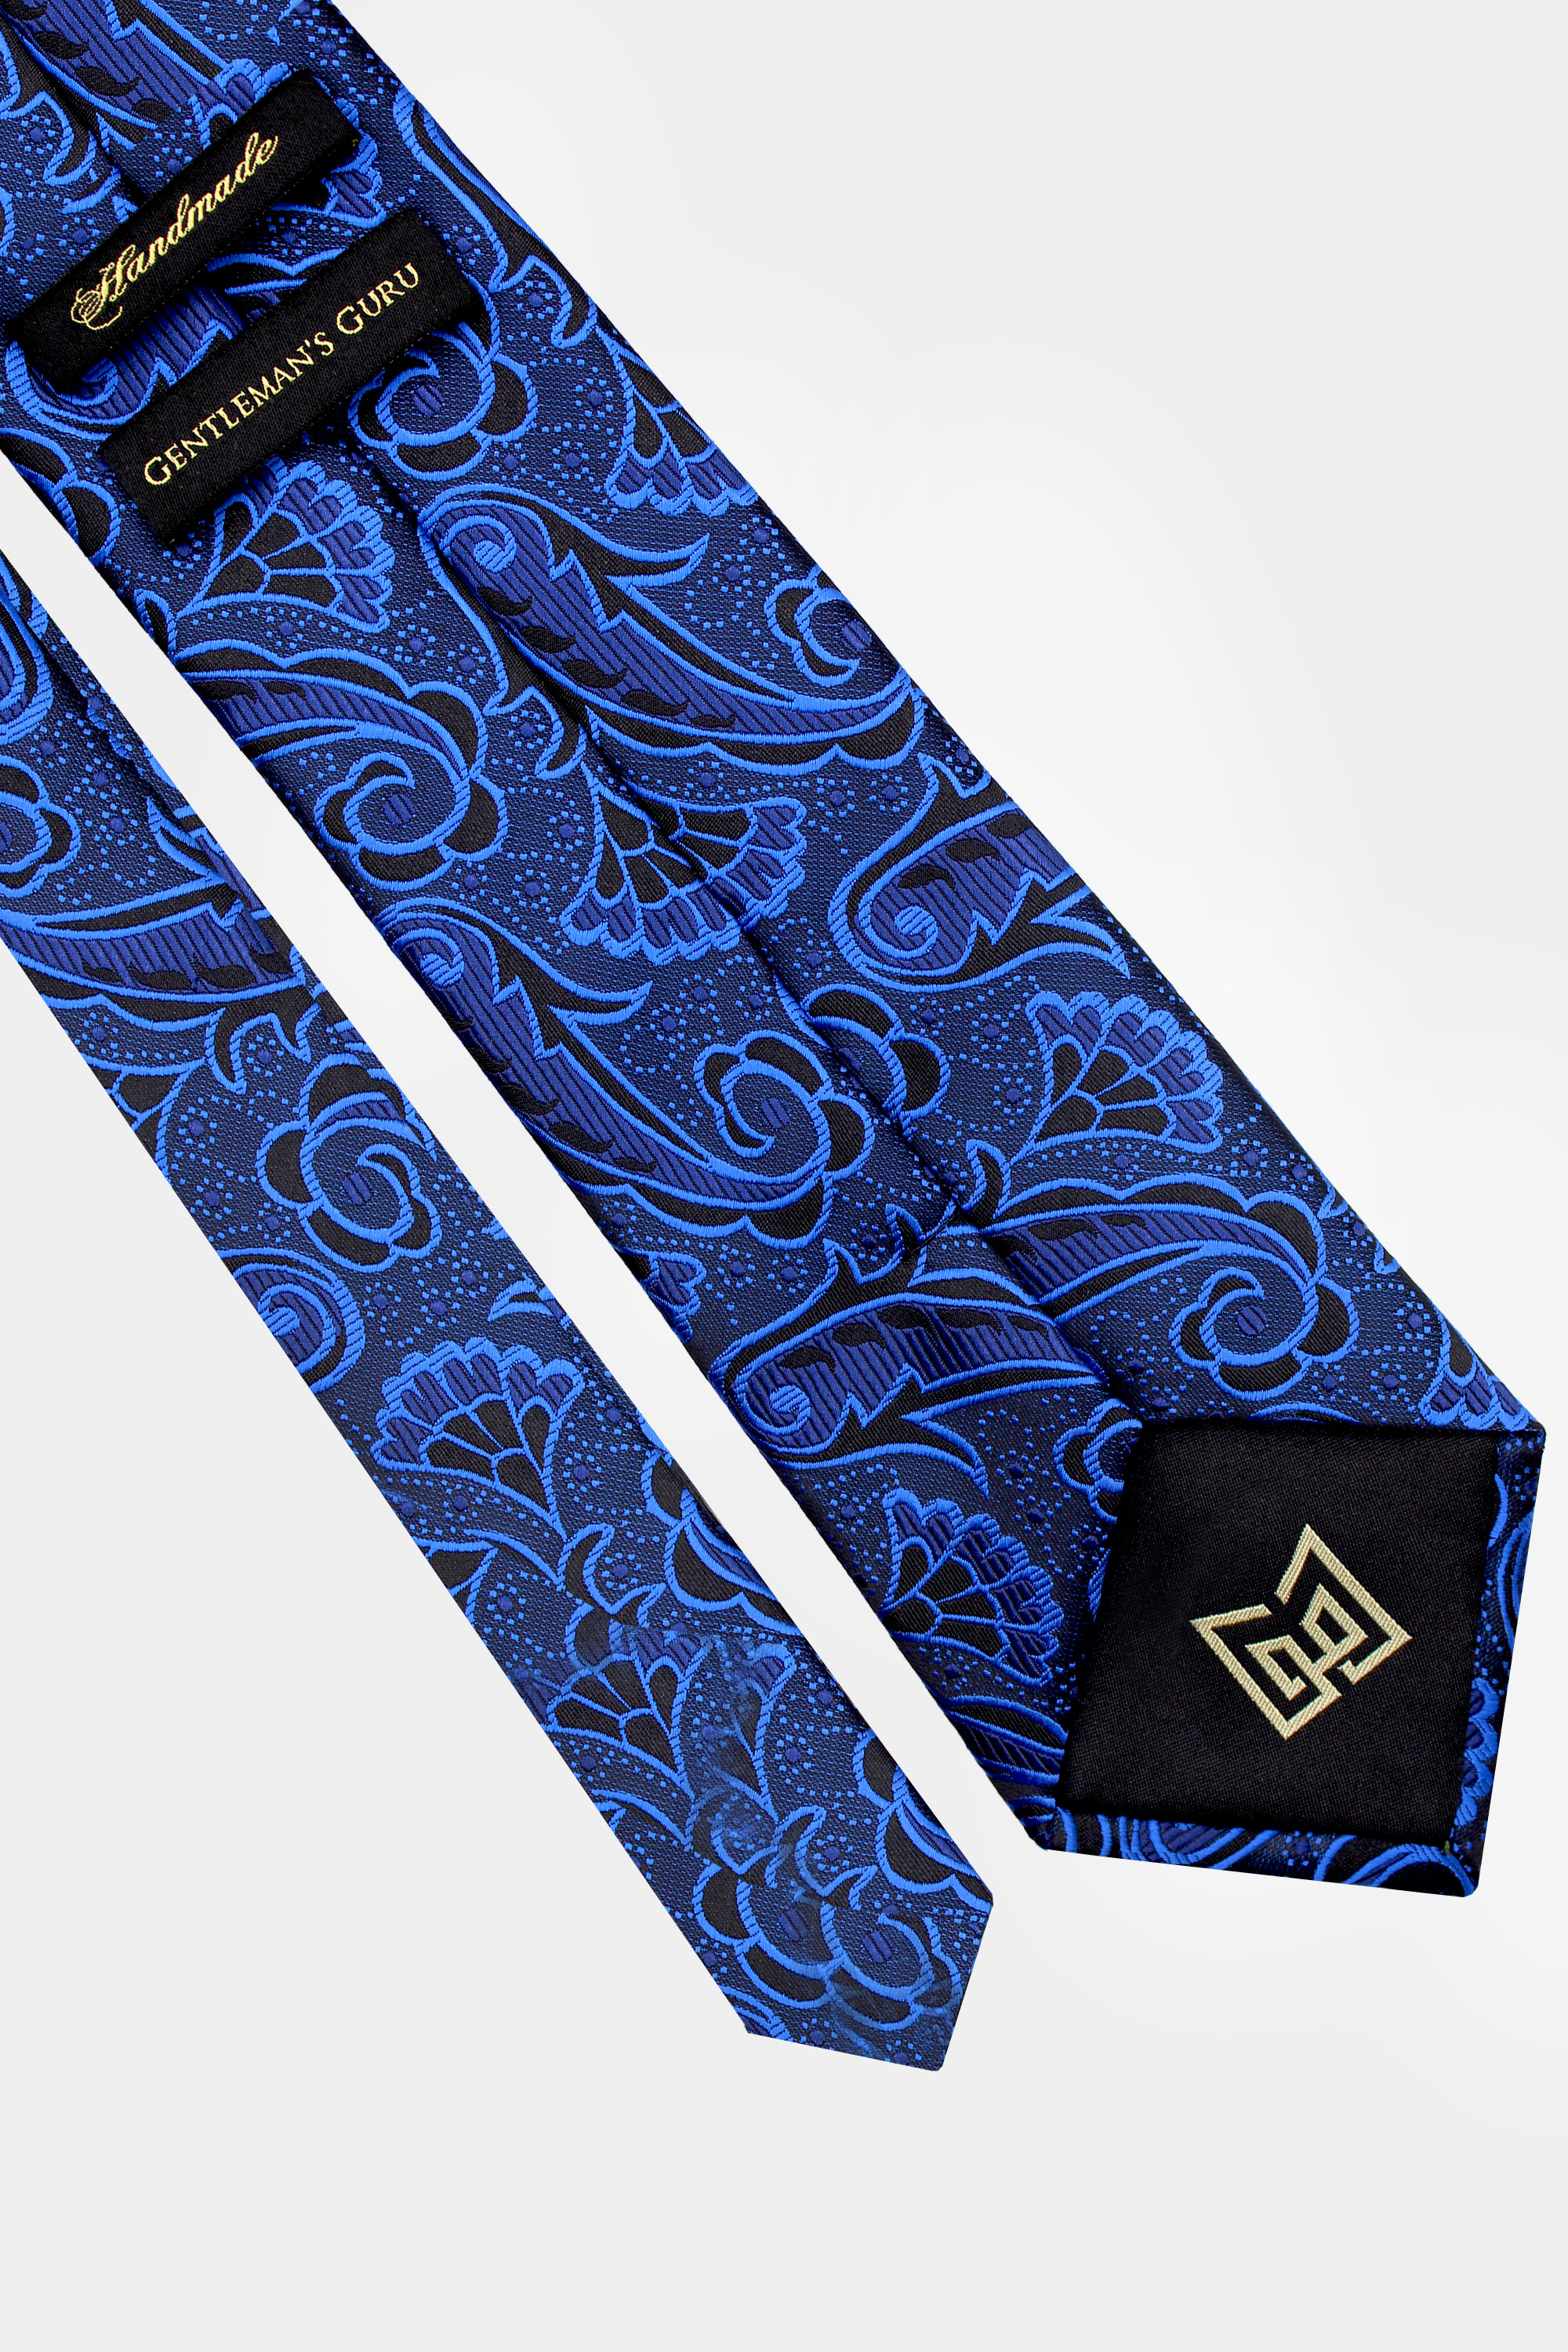 Royal-Blue-and-Black-Tie-from-Gentlemansguru.com